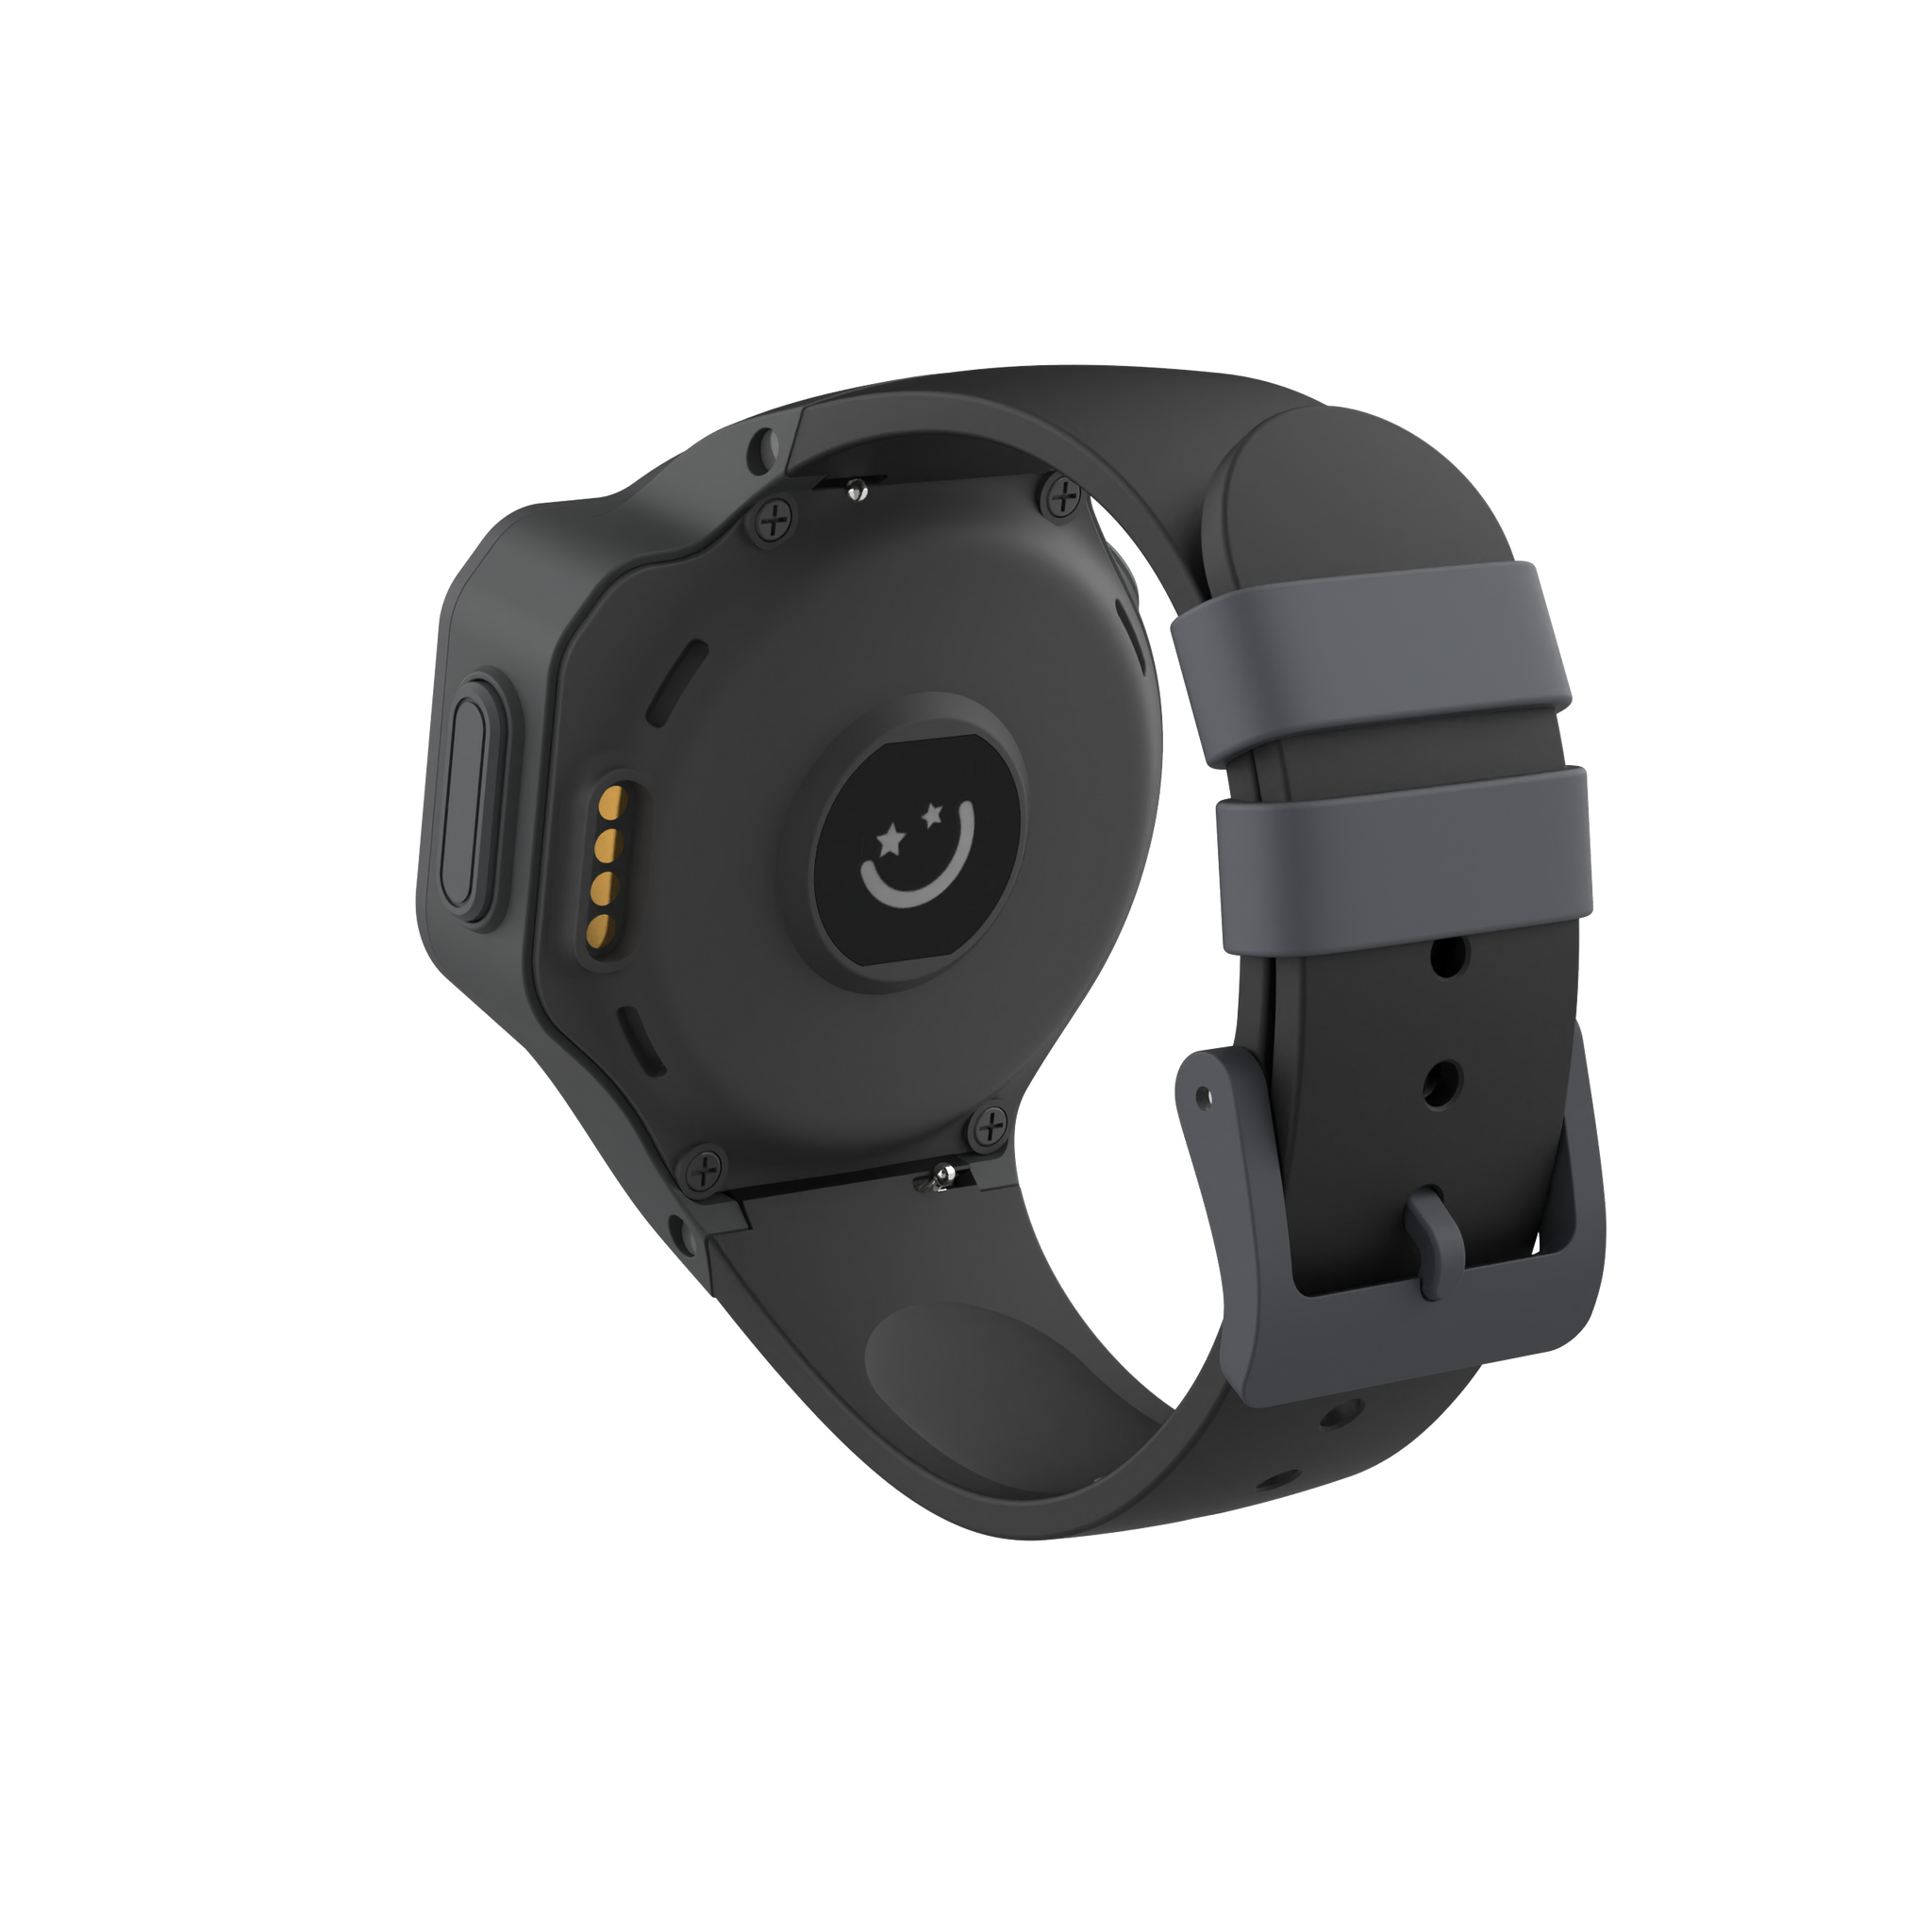 myFirst Fone R1c 4G GPS音樂智能手錶